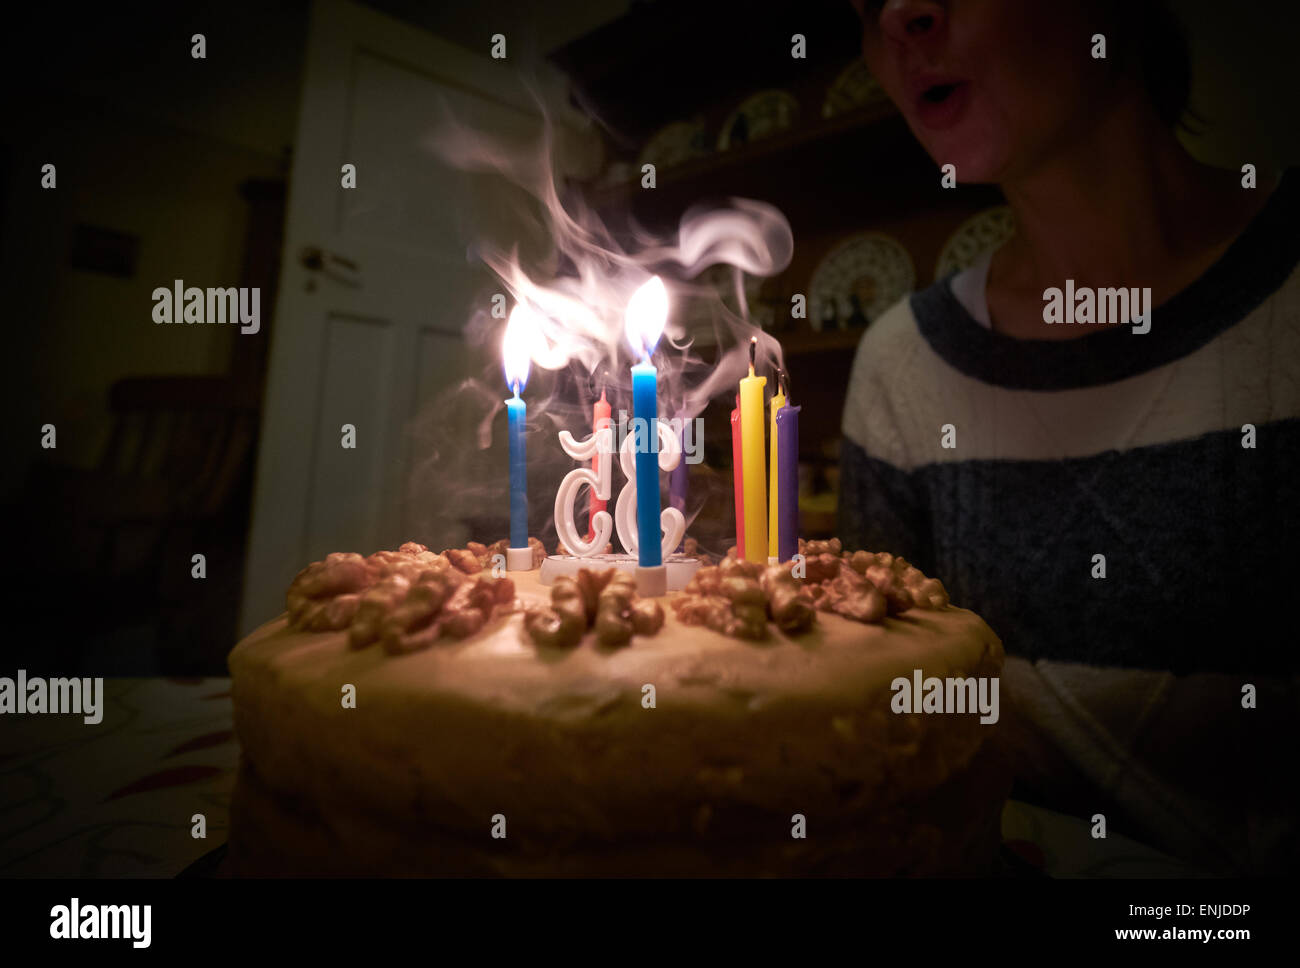 Eine Frau Ausblasen der Kerzen auf ihrem Geburtstagskuchen. Instagram Typ Styling angewendet einige leichte Korn hinzugefügt. Stockfoto